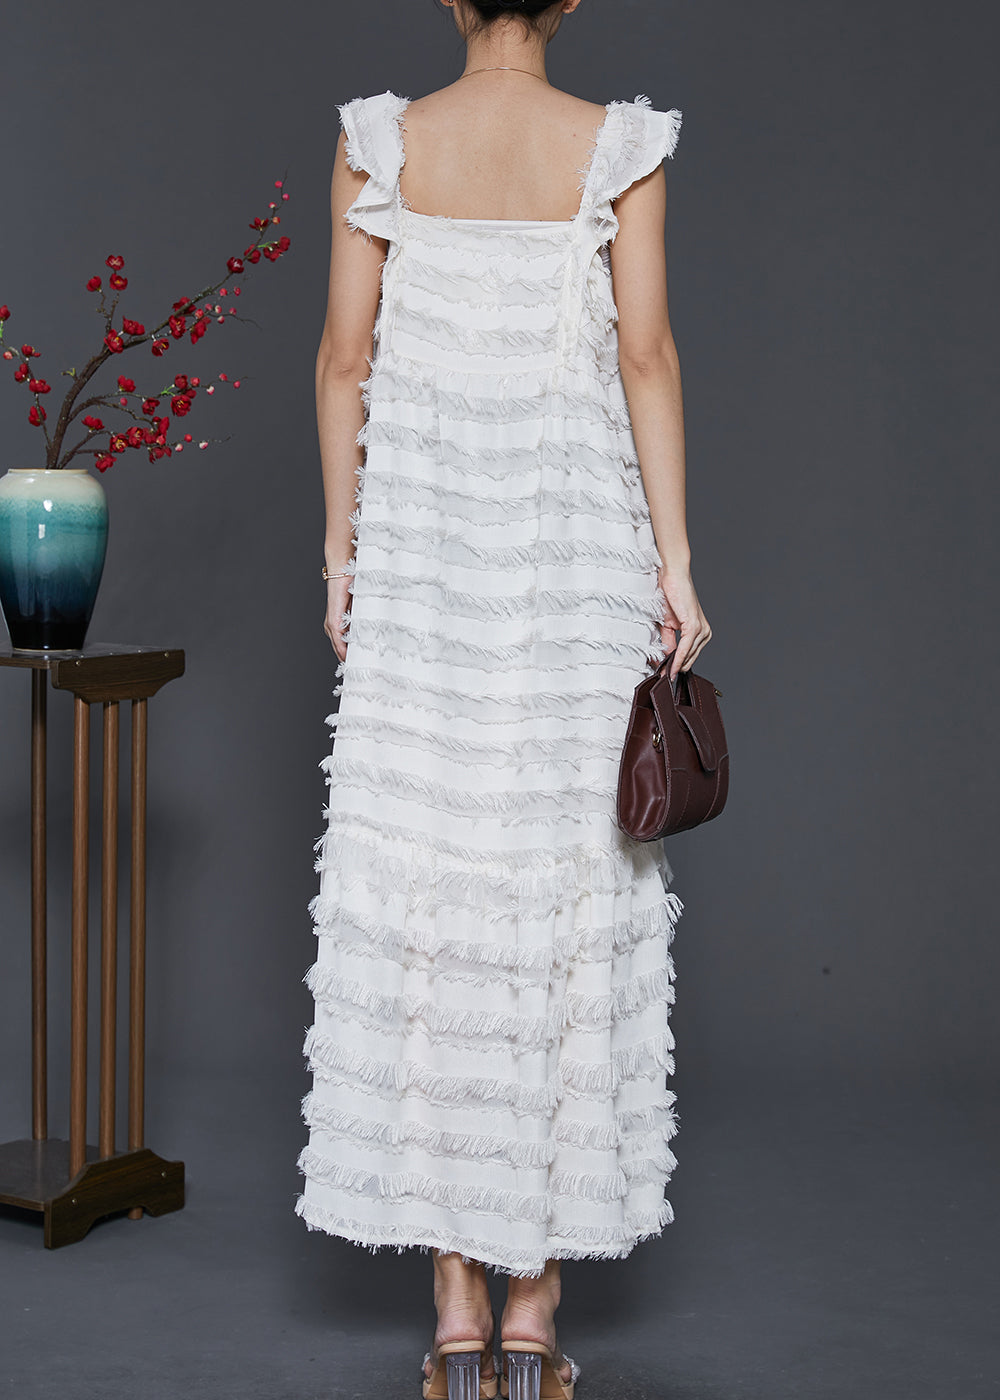 Bohemian White Tasseled Cotton Summer Dresses Sleeveless